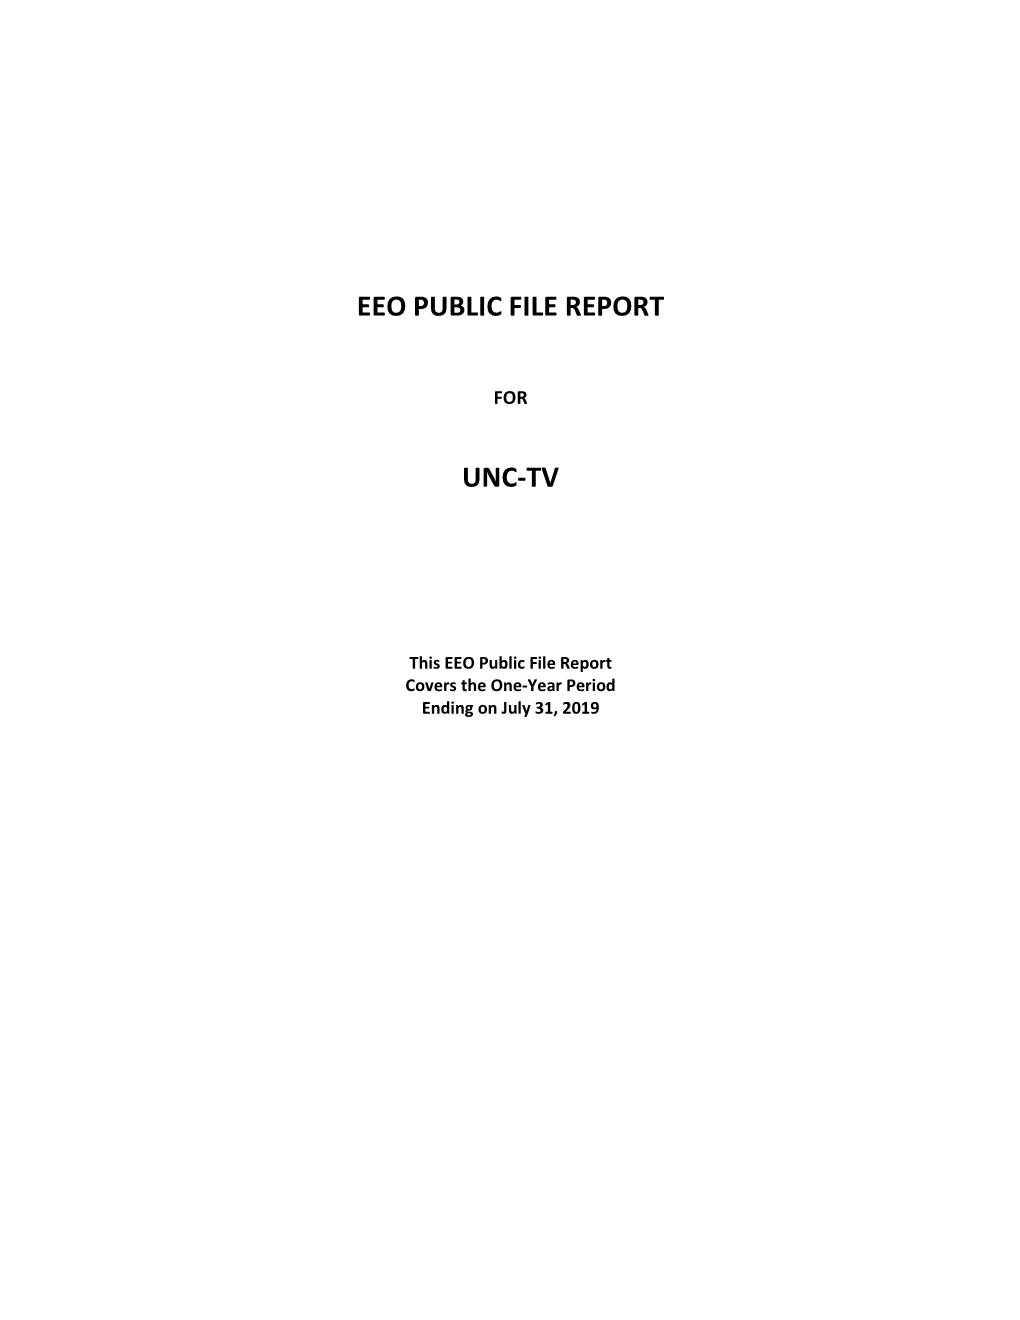 Eeo Public File Report Unc-Tv